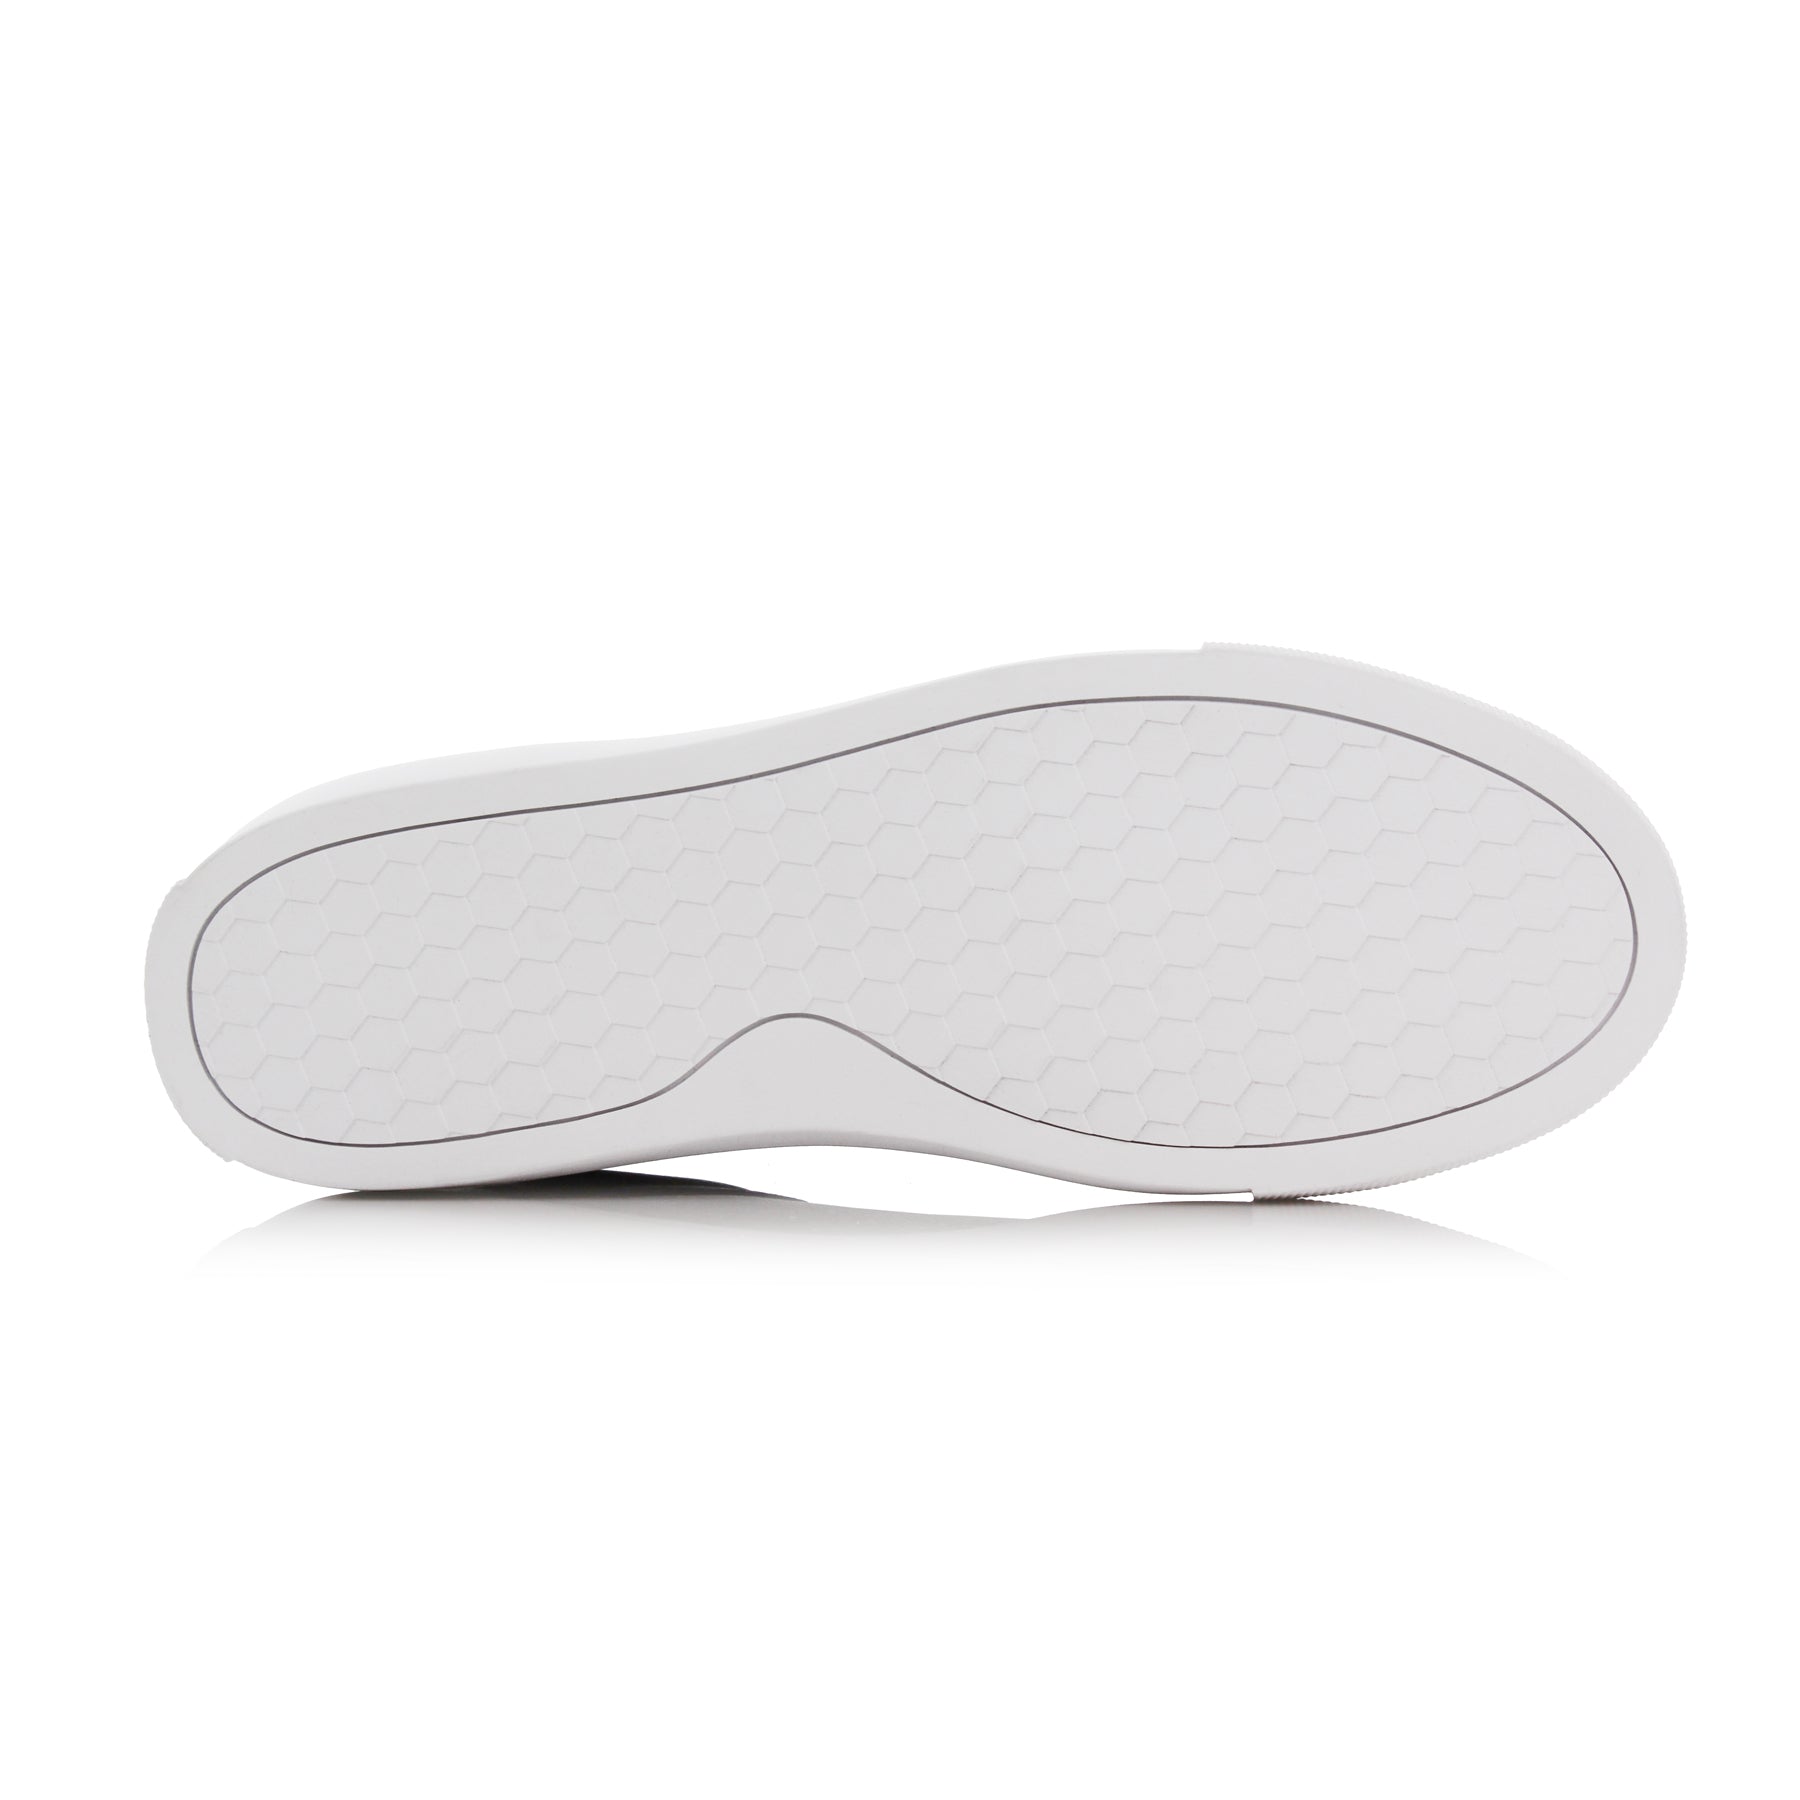 Low-Top Sneakers | Daniel by Ferro Aldo | Conal Footwear | Bottom Sole Angle View